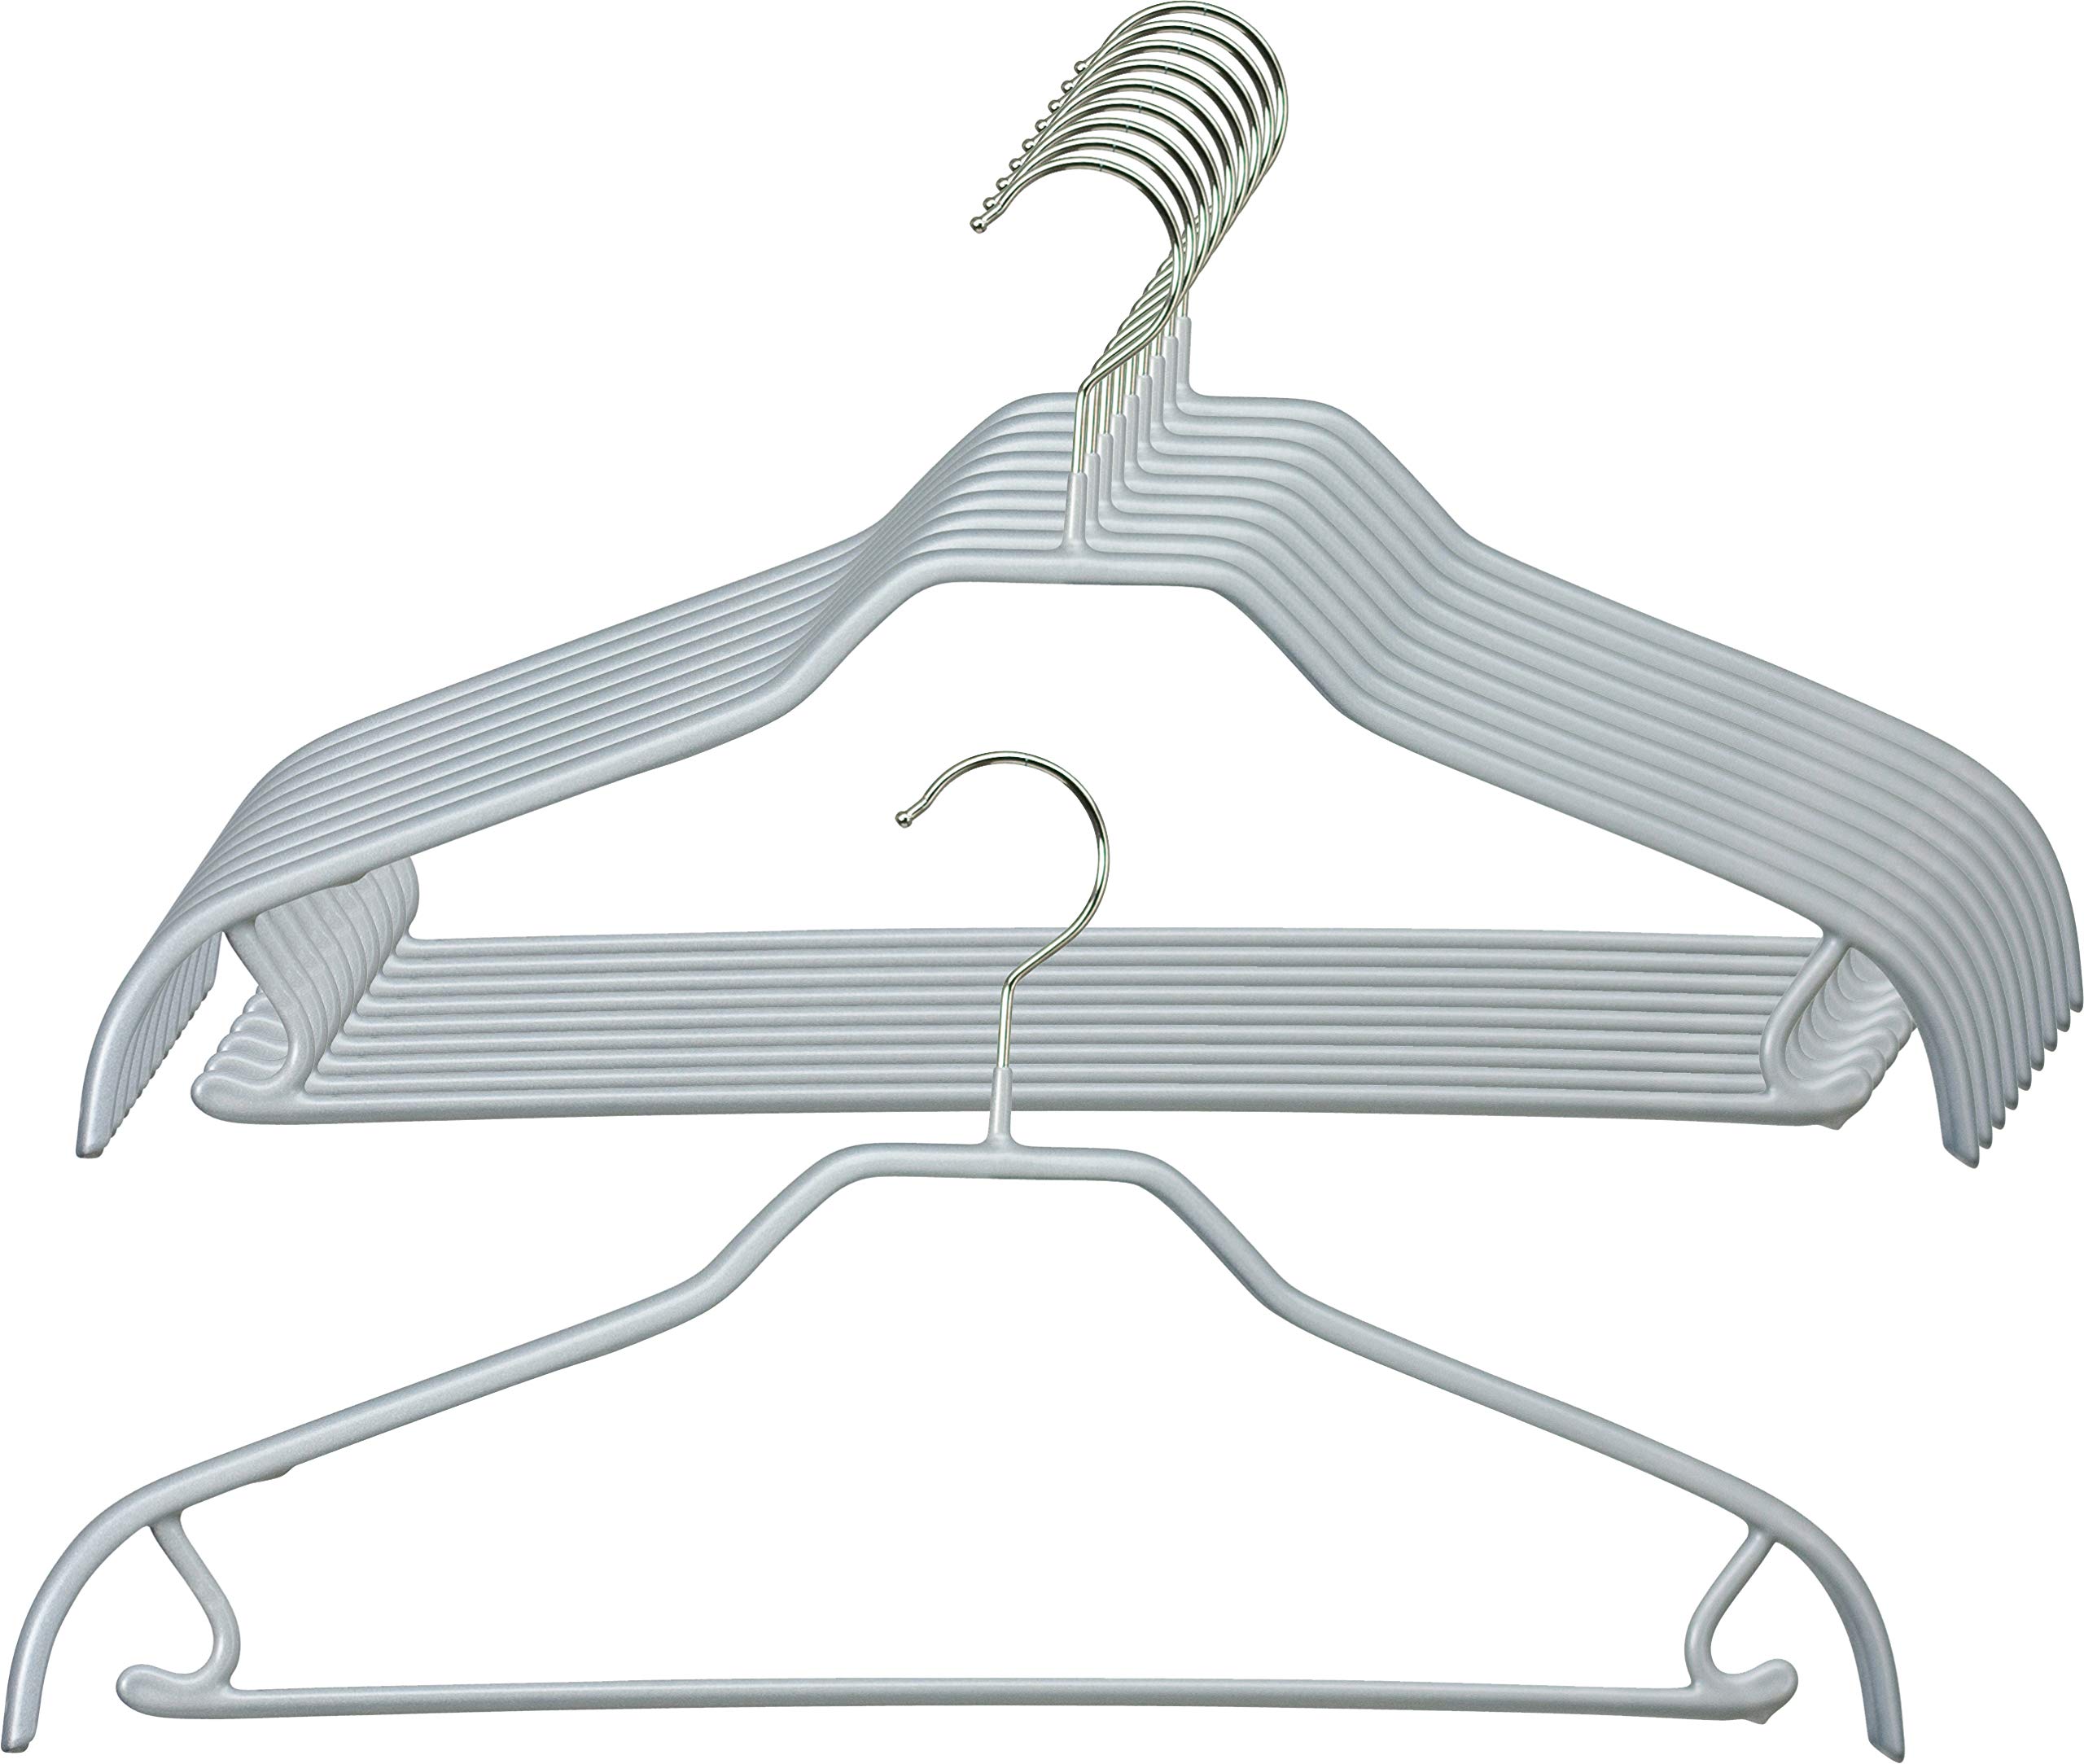 MAWA Kleiderbügel, 10 Stück, platzsparende Universalbügel mit Rockhaken und Steg für Hosen, Röcke und Tops, 360° drehbar, hochwertige Antirutsch-Beschichtung, 41 cm, Silber